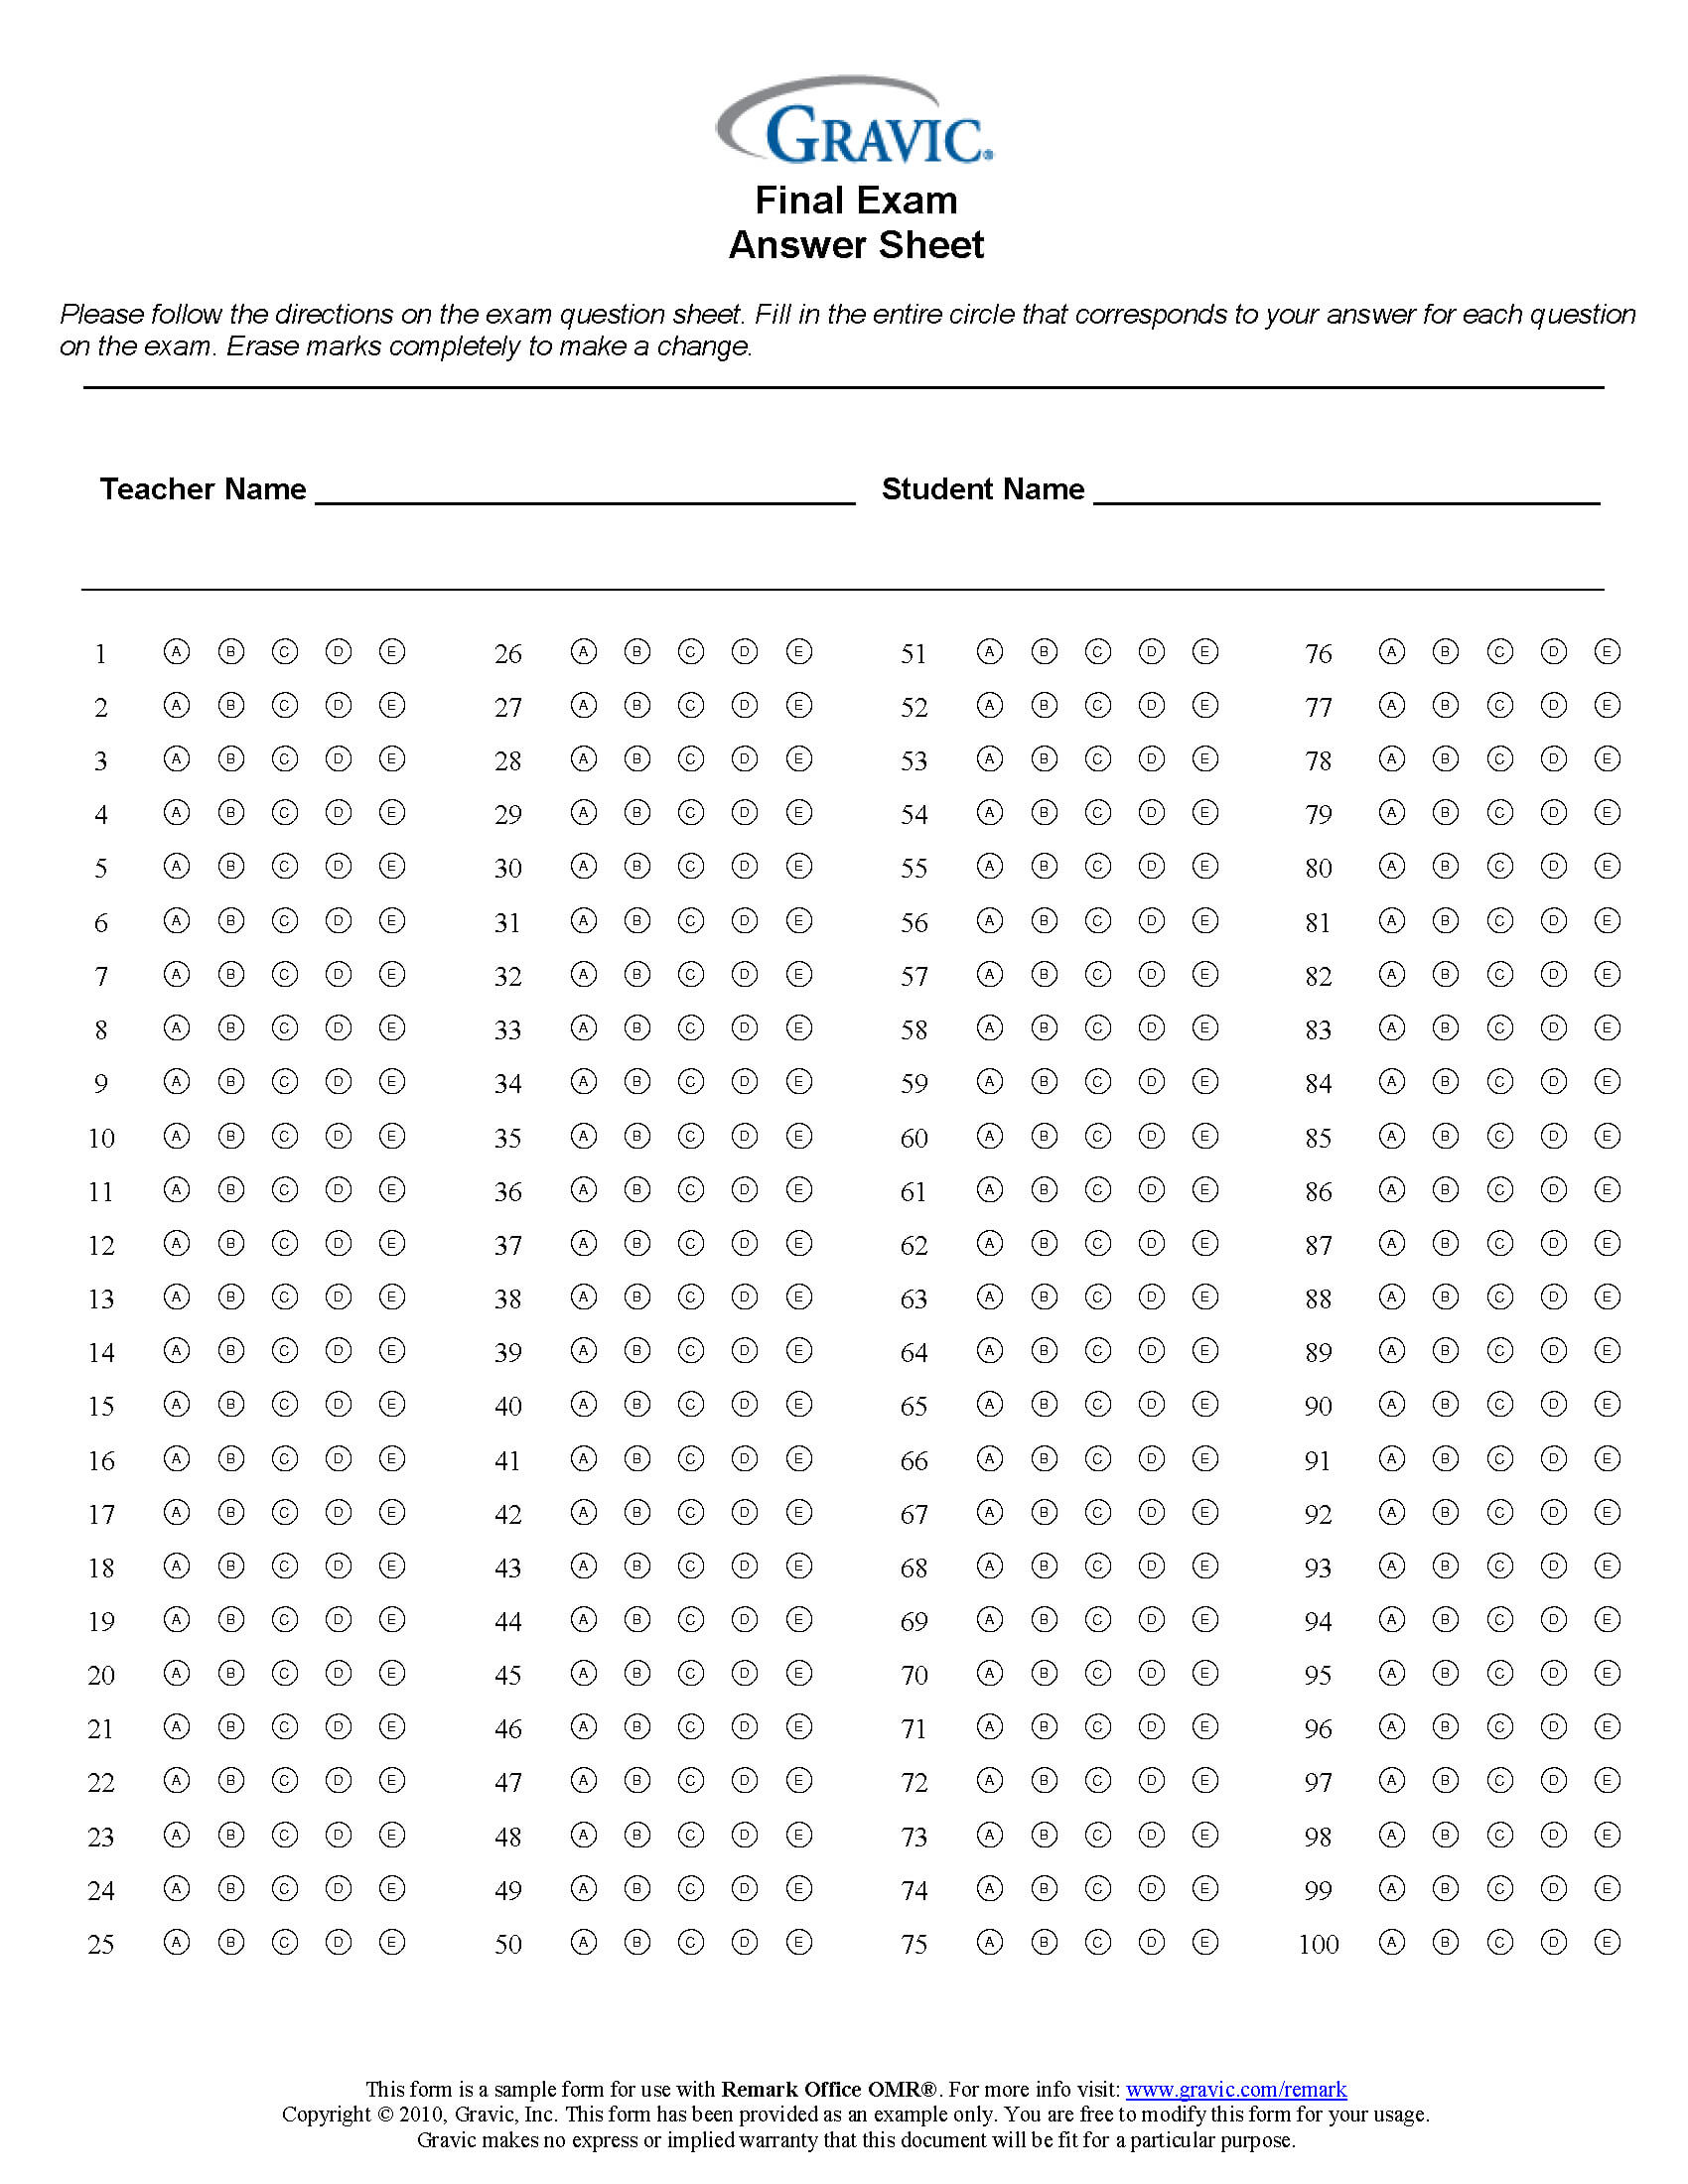 Final Exam 100 Question Test Answer Sheet · Remark Software Inside Blank Answer Sheet Template 1 100